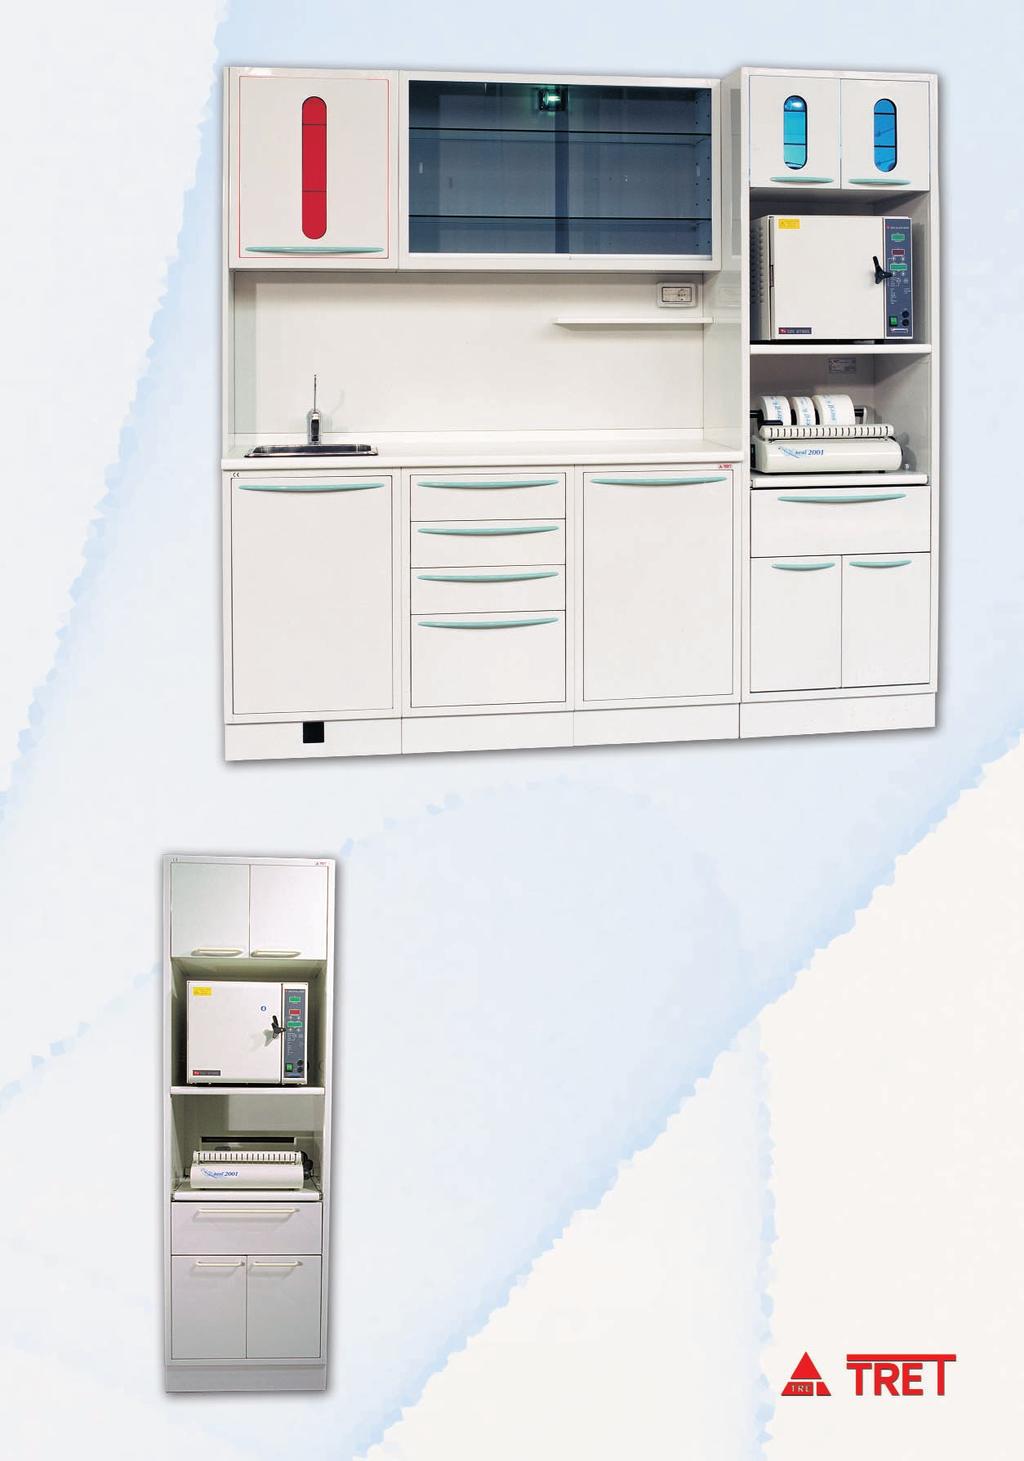 estraibile Extractable drawer s detail Ausziehbare Tür Detail Détail de porte extractible S110 Colonna 98